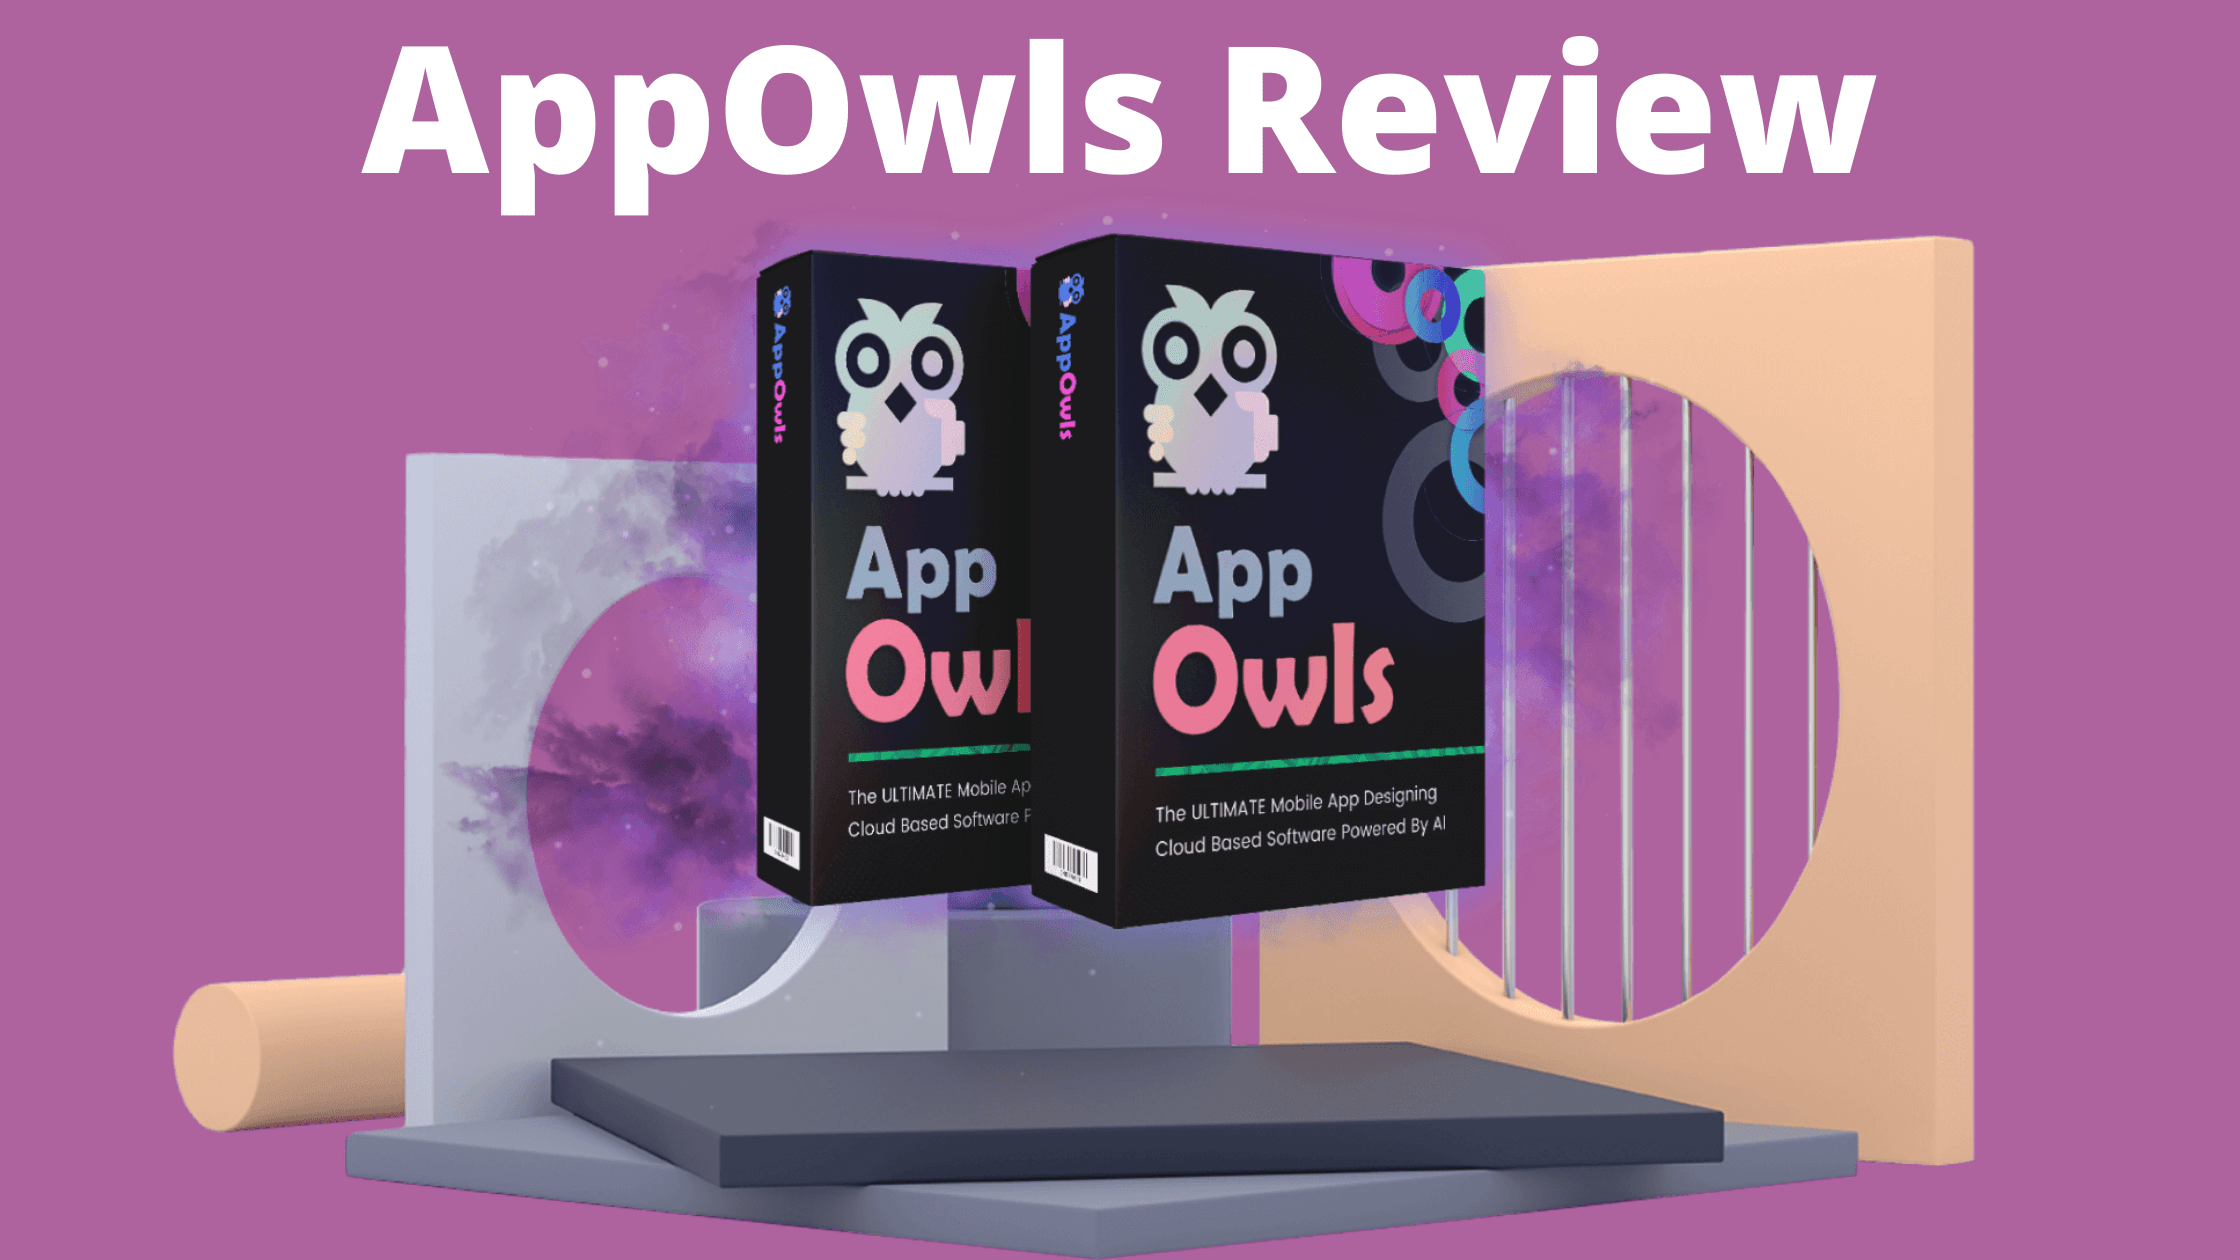 AppOwls Review